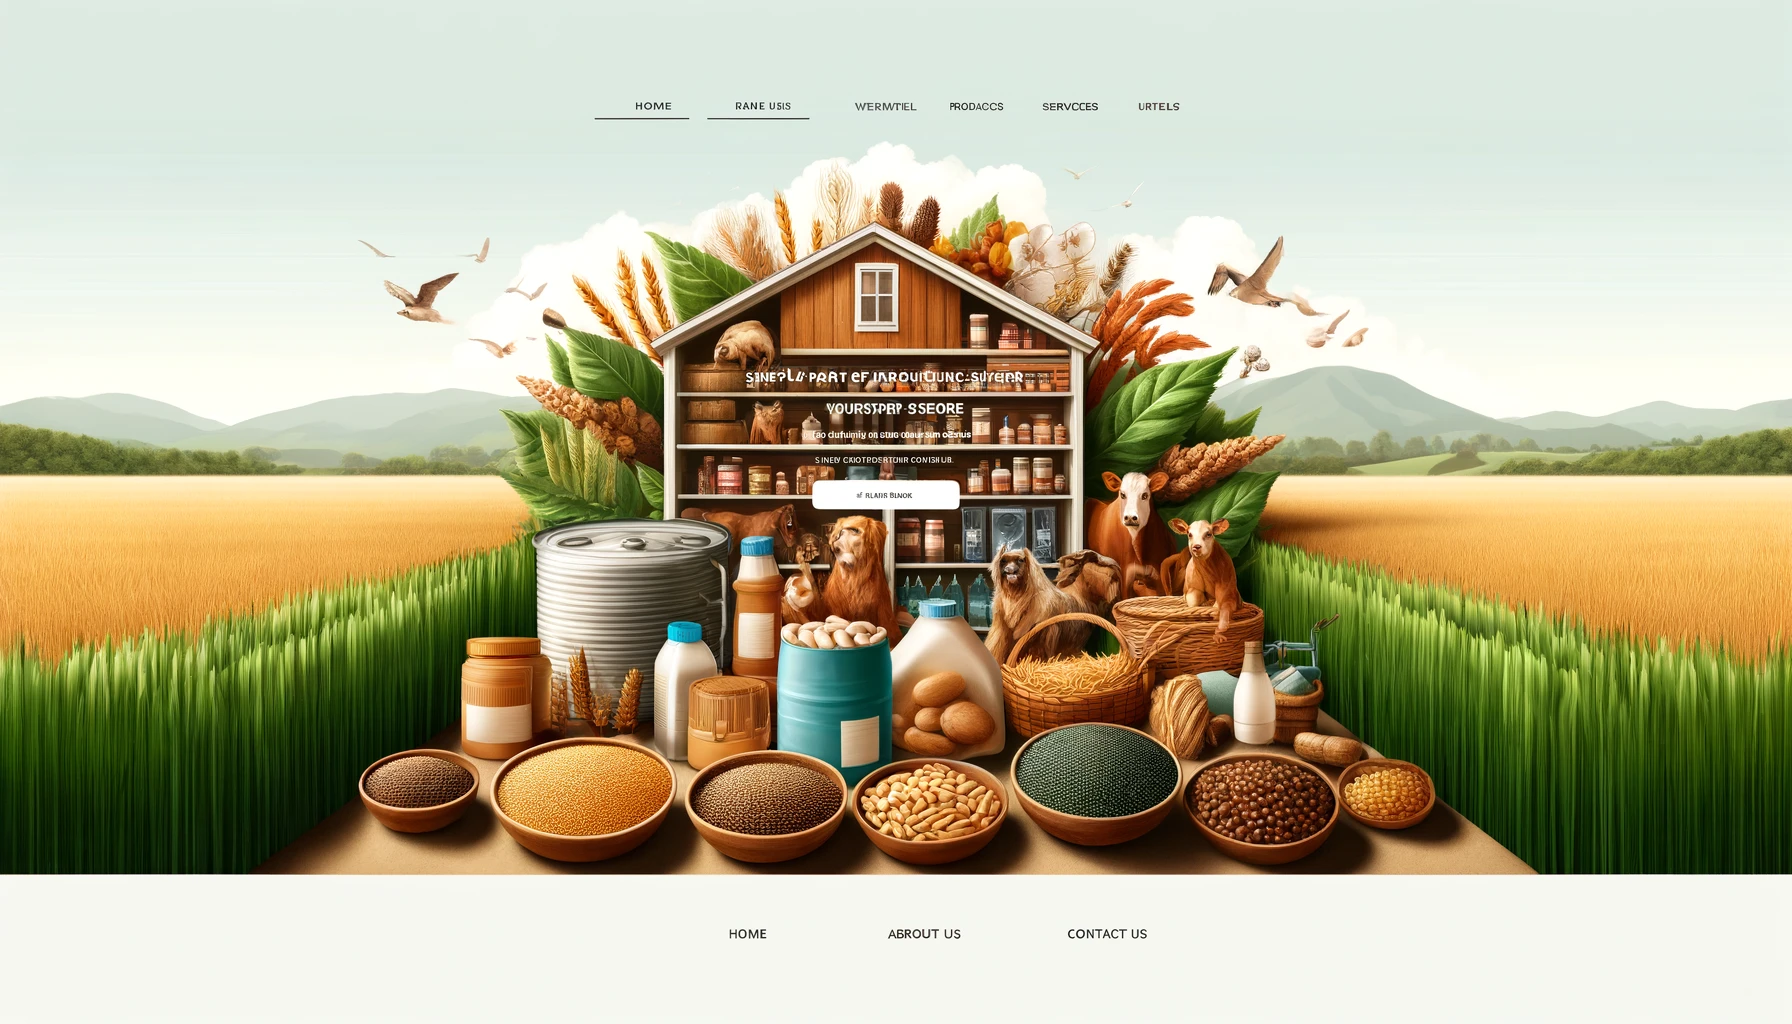 Crear un Sitio Web para una Tienda de Productos Agrícolas y Pecuarios